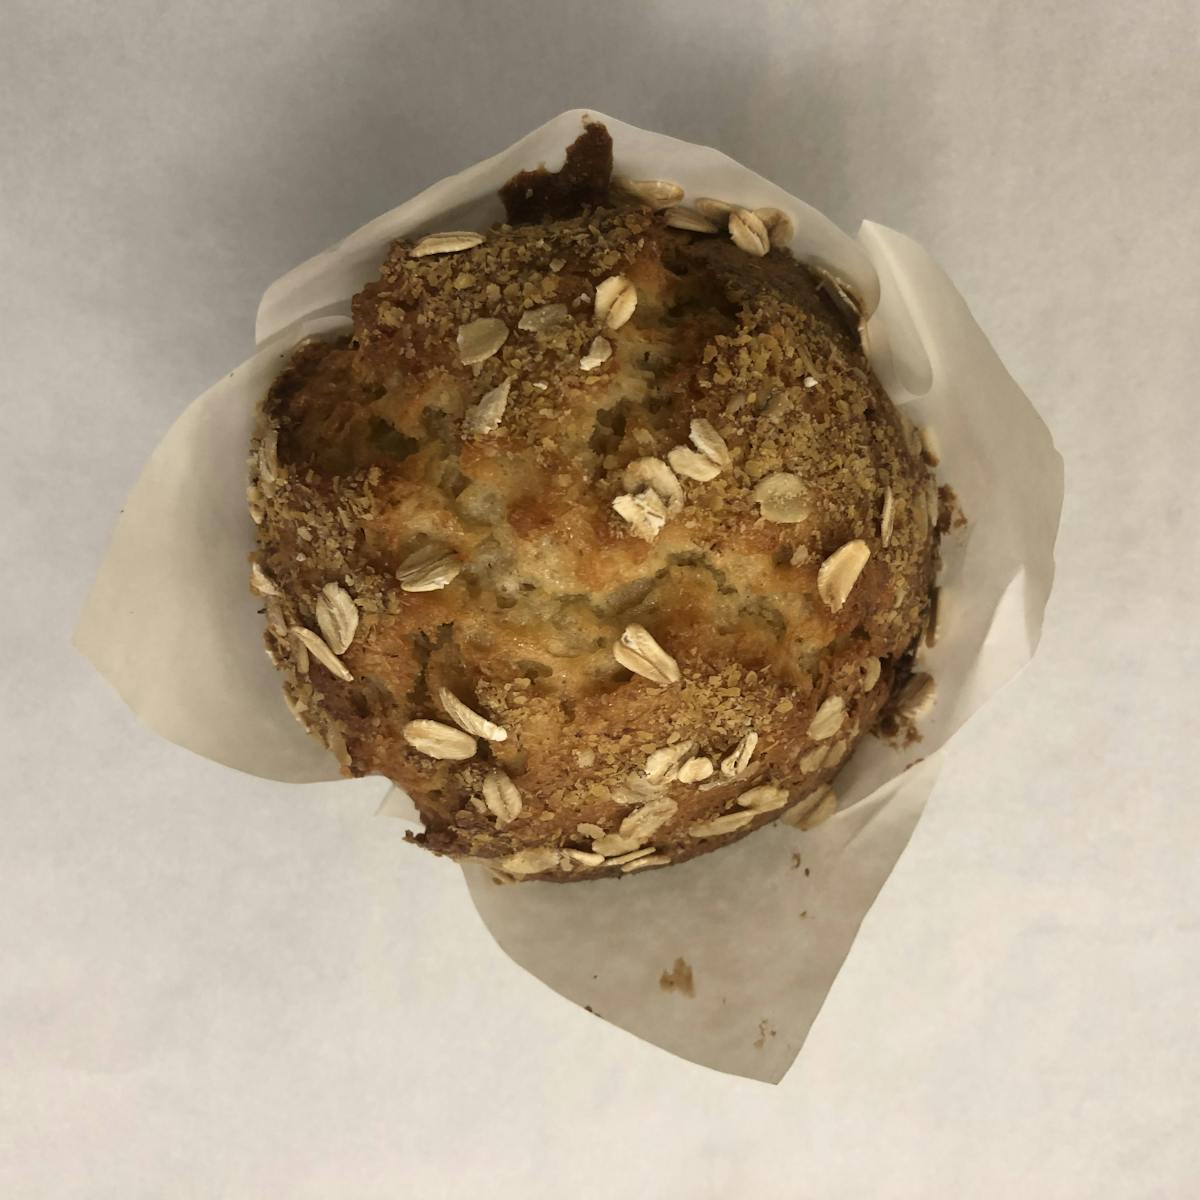 a muffin